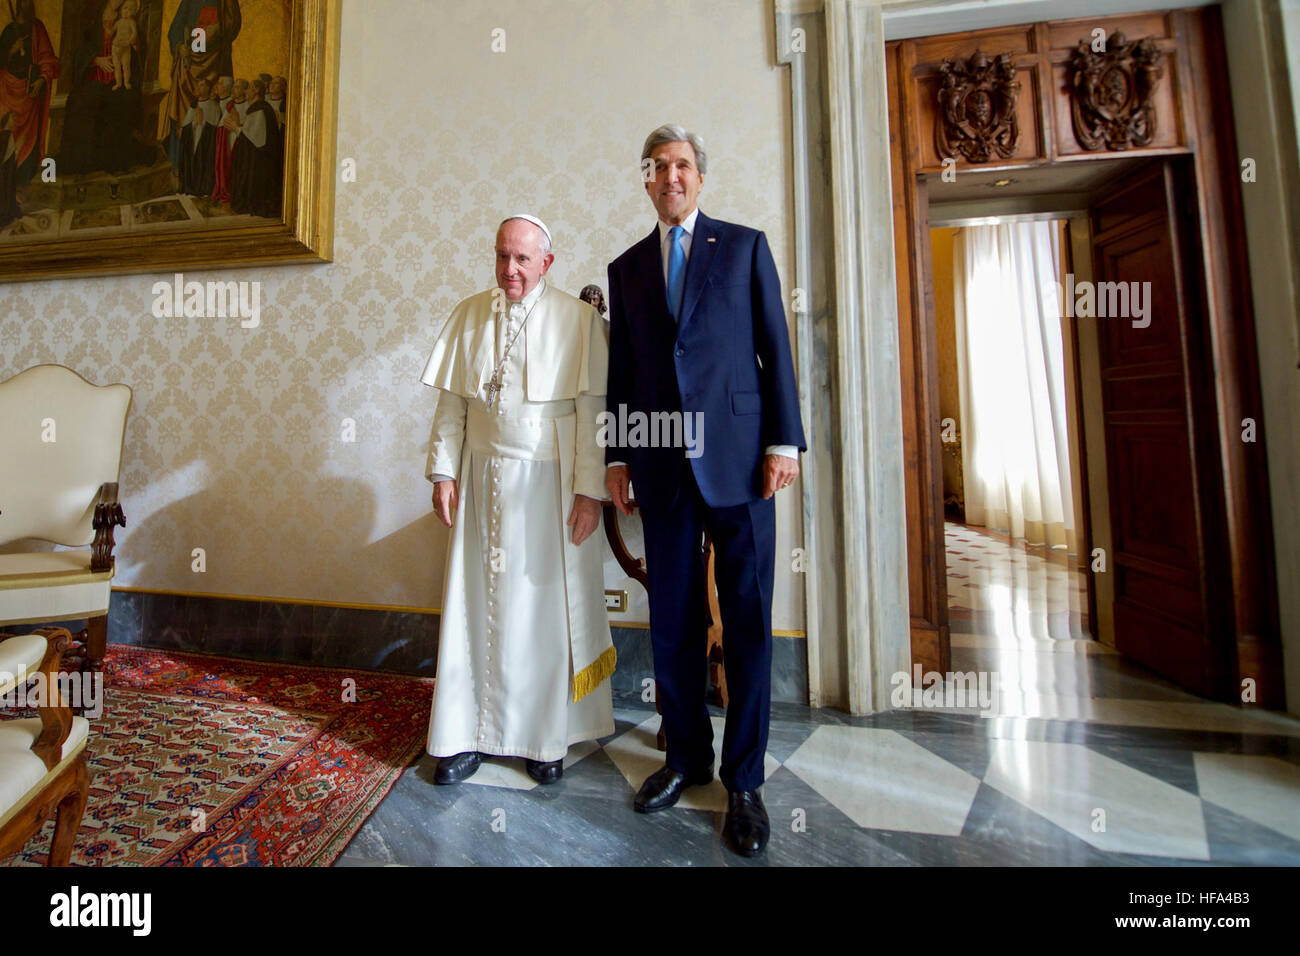 Le secrétaire d'Etat John Kerry se tient avec le Pape François le 2 décembre 2016, avant d'une réunion dans les appartements pontificaux au Vatican dans la Cité du Vatican. Banque D'Images